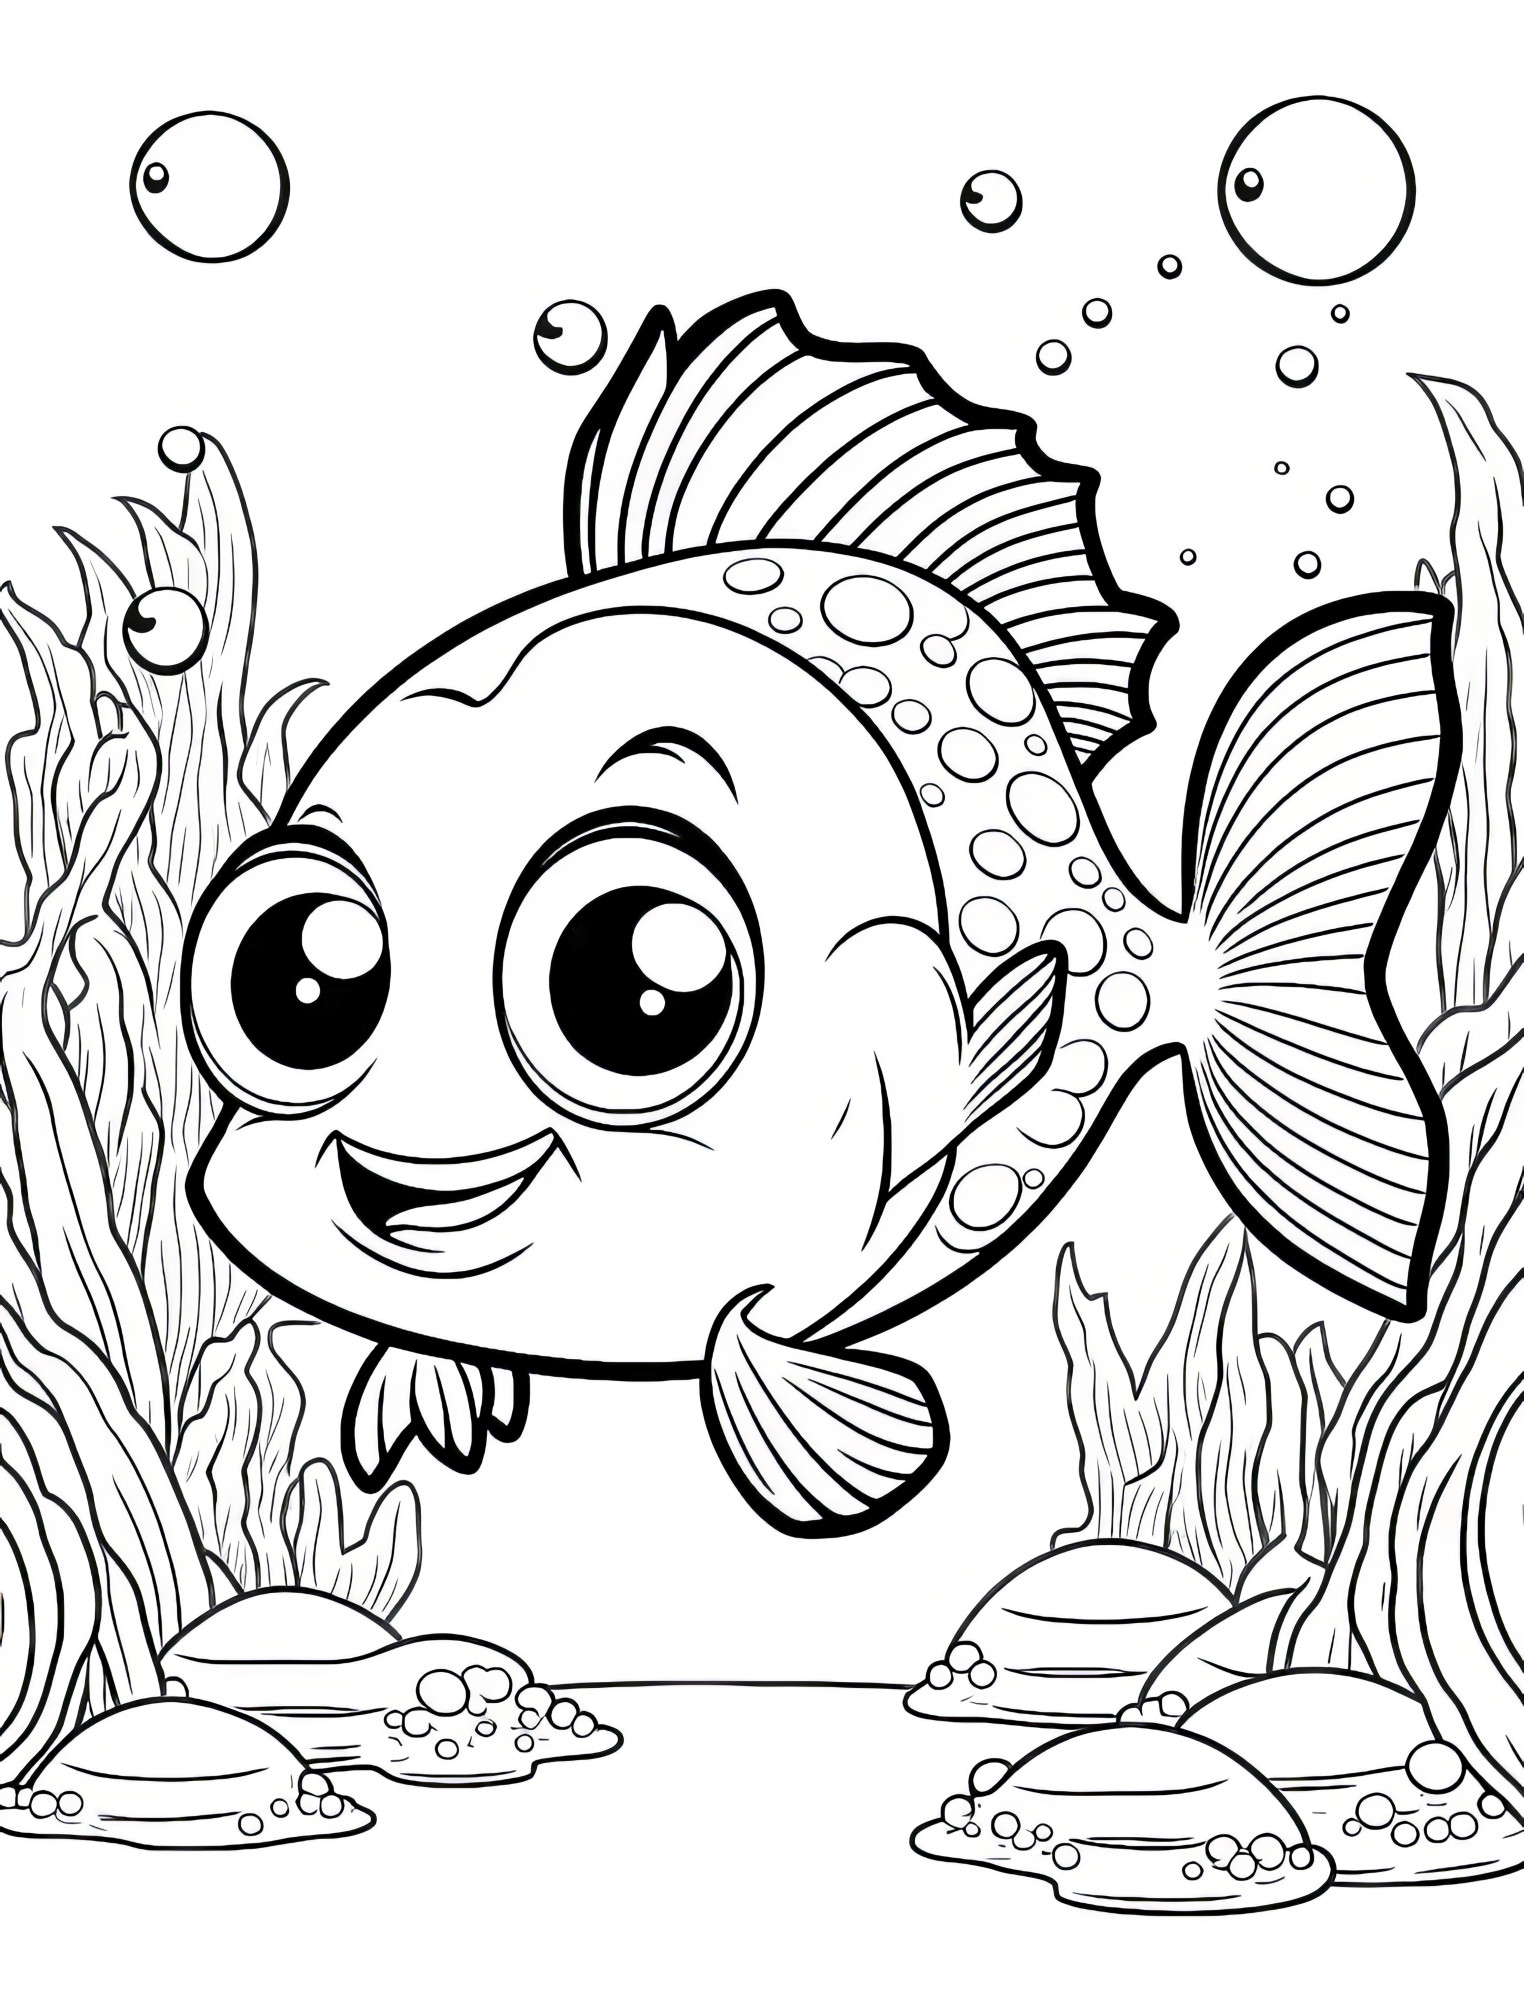 Раскраска для детей: антистрессовая рыба с лицом